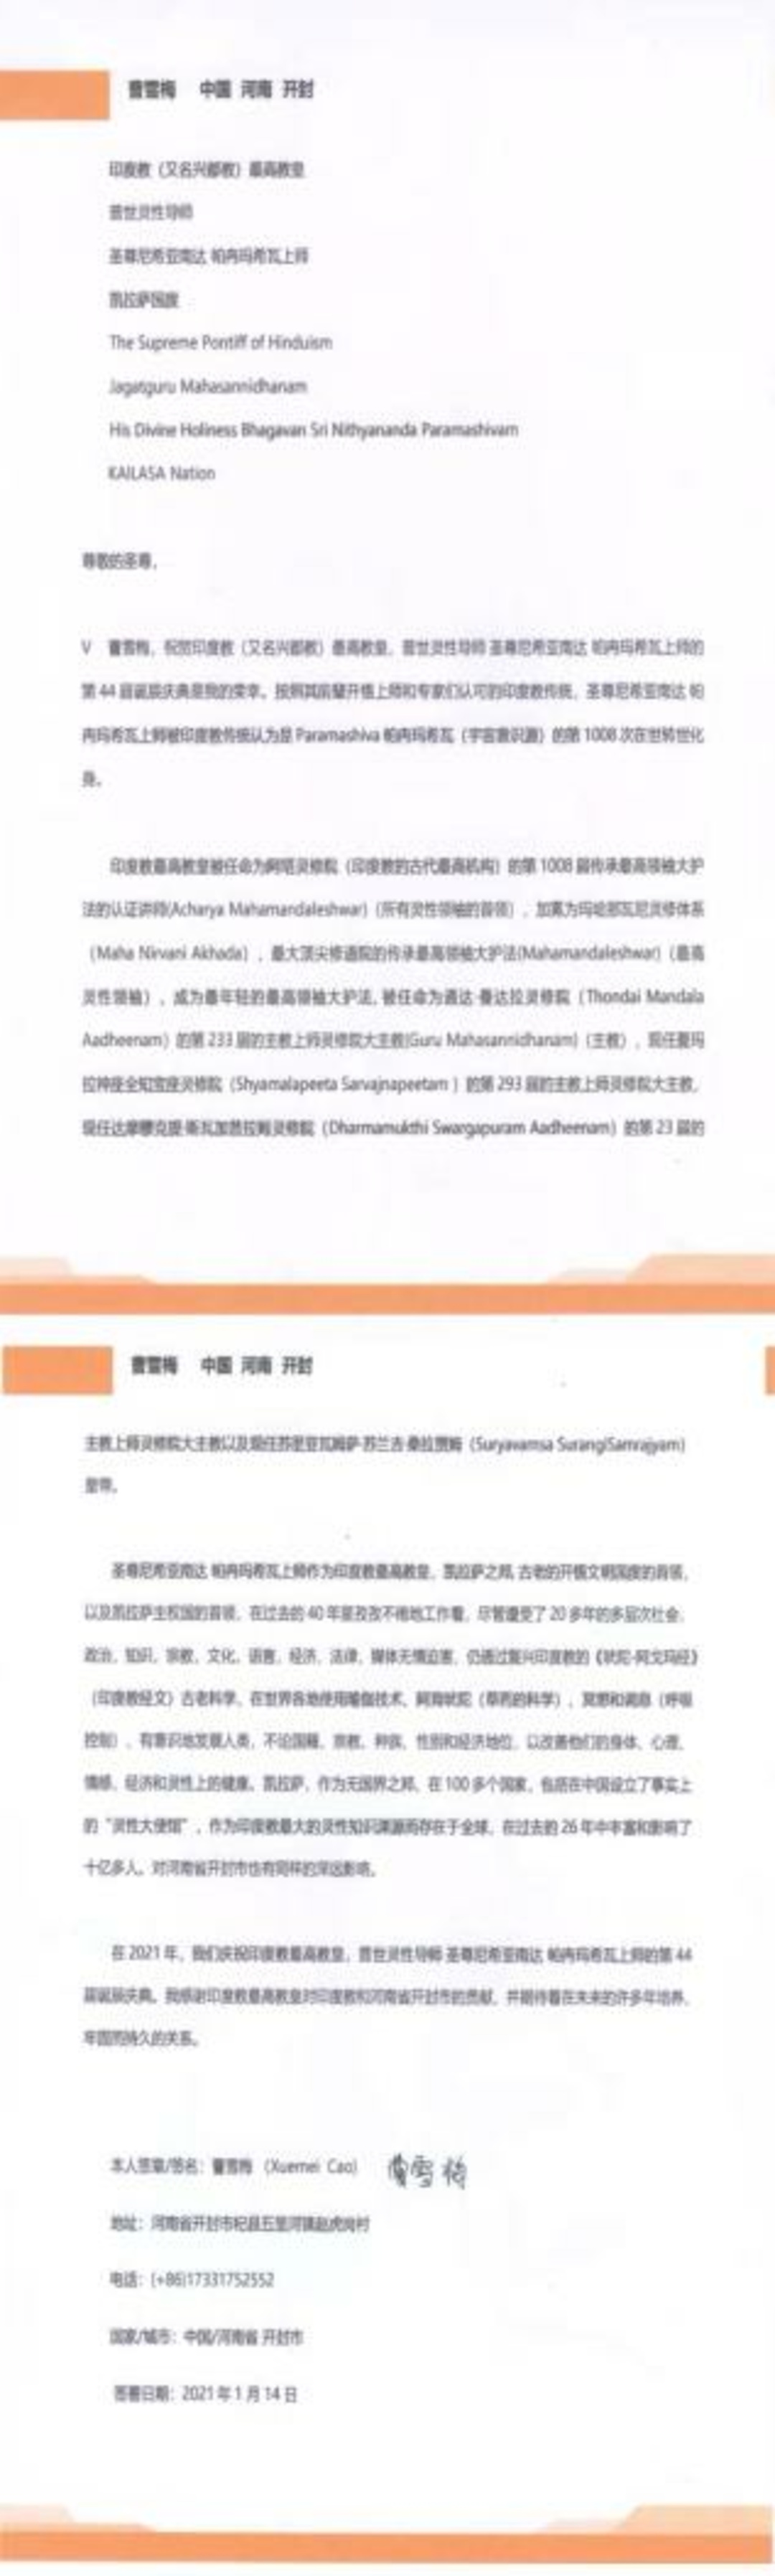 China---Xuemei-Cao---14-Jan-2021-(Proclamation)-12XvZm1JLXJlHdom7b7pp2U7H51VqajMr.pdf